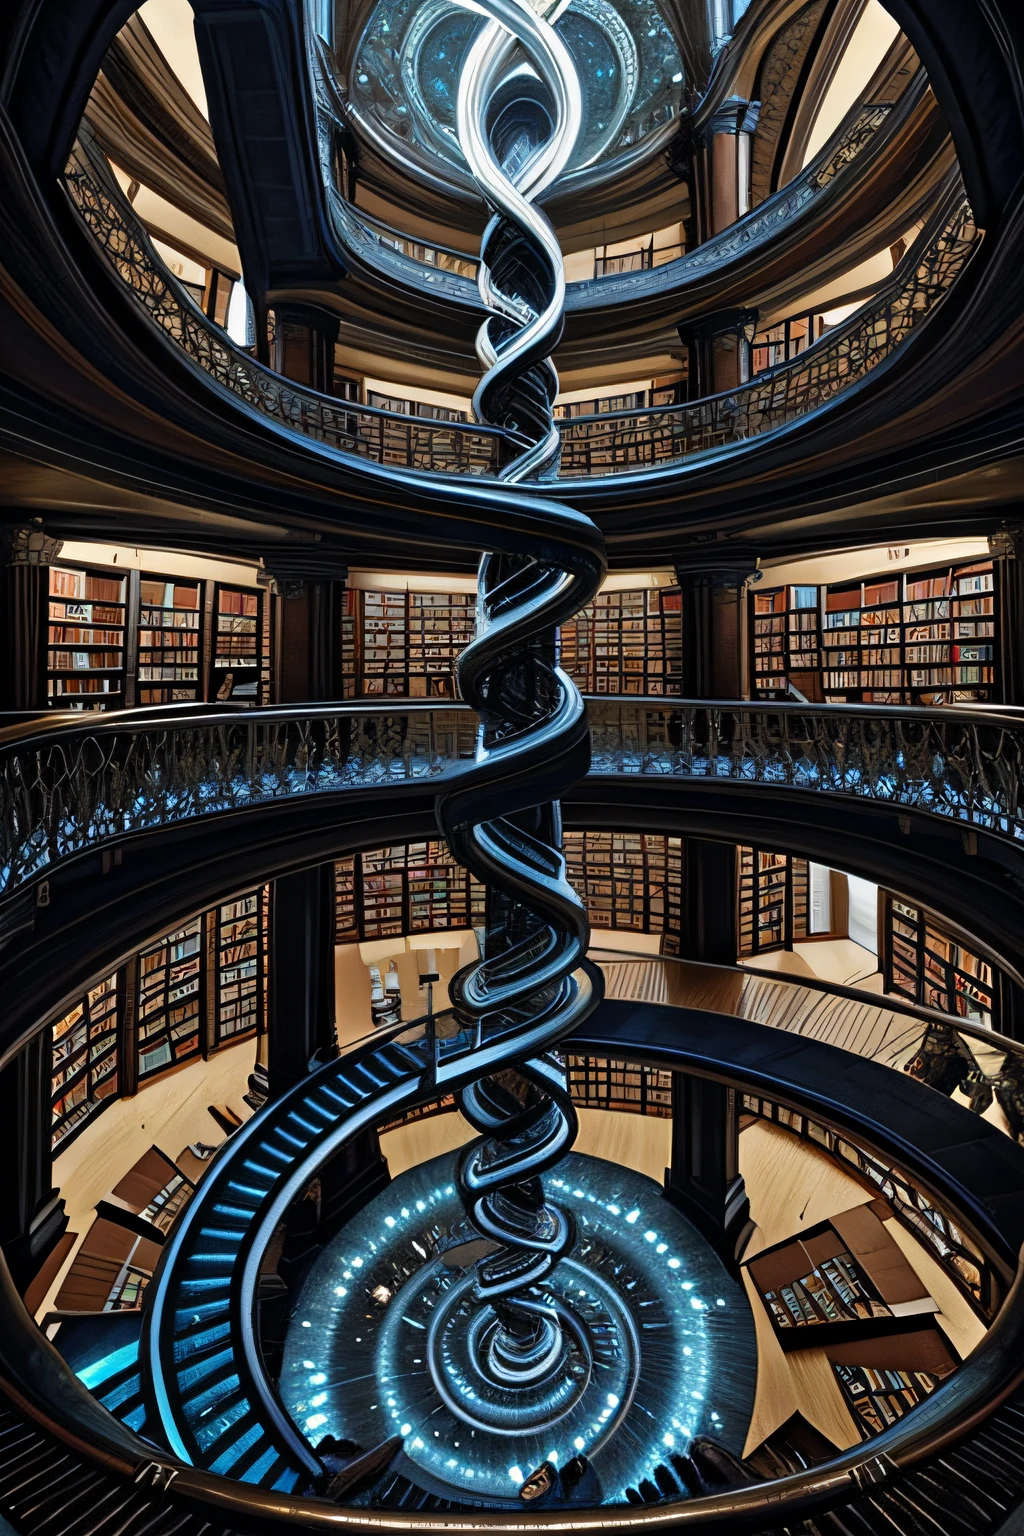 傑作, 最高品質、無限に登る天体の図書館を見つめ、光に向かって螺旋を描く, 本, 螺旋, エッシャー, 暗い魂, ブラッドボーン 幻想的, 魔法の図書館, 勾配, ファンタジー, トレンドアートステーション, フラクタル, 華やかな, マットペインティング --ar 1:3 --q 0.5